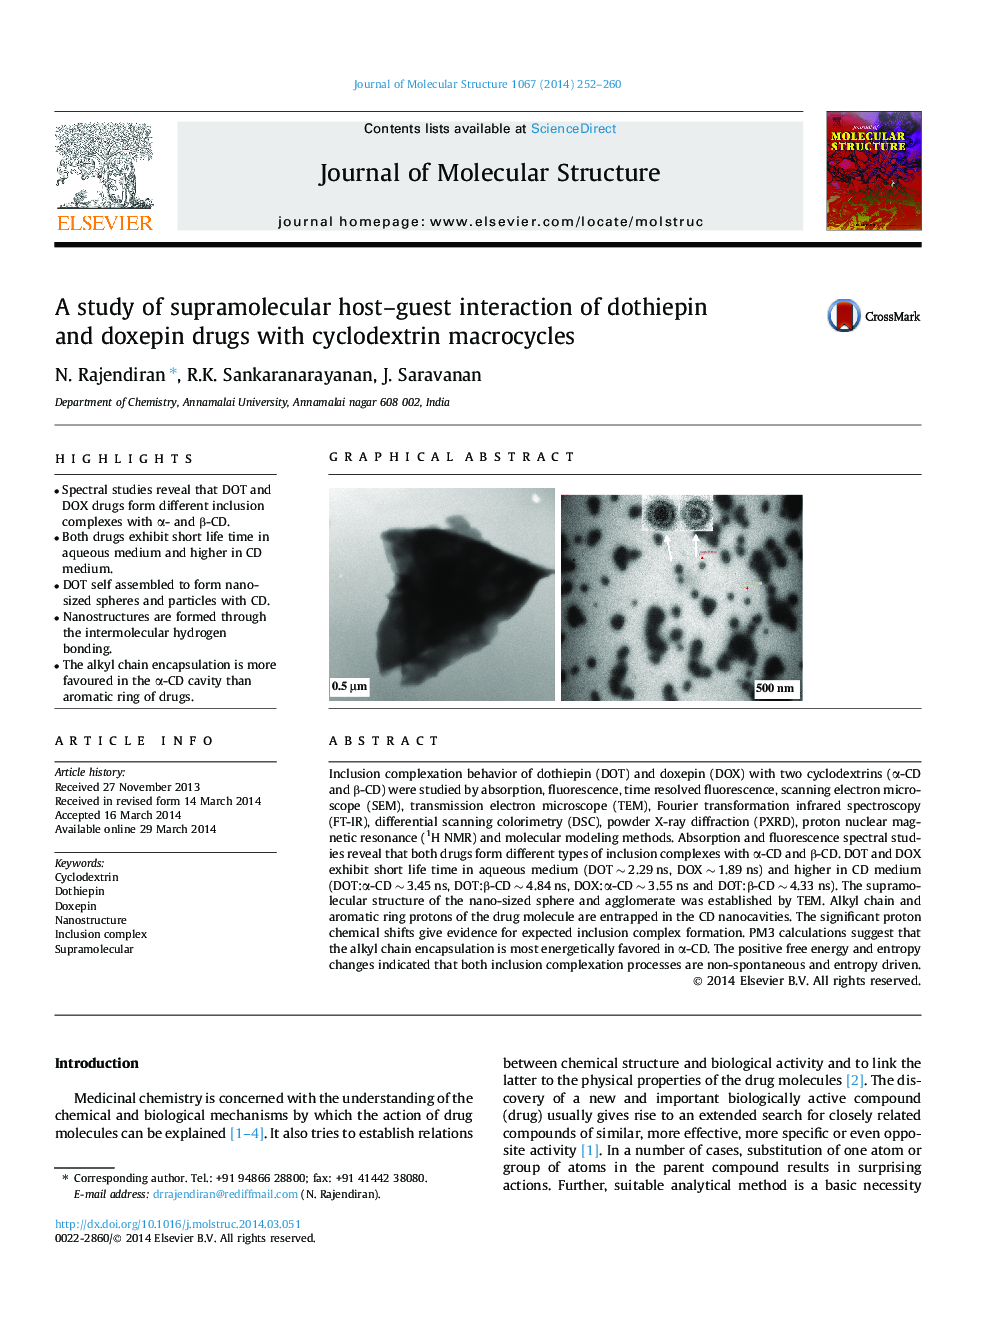 مطالعه تجربی سوءمصرف داروی سوپرمولکولی داروهای داوتیپین و دوکسپین با ماکروسکوپهای سیکلوکودکسترین 